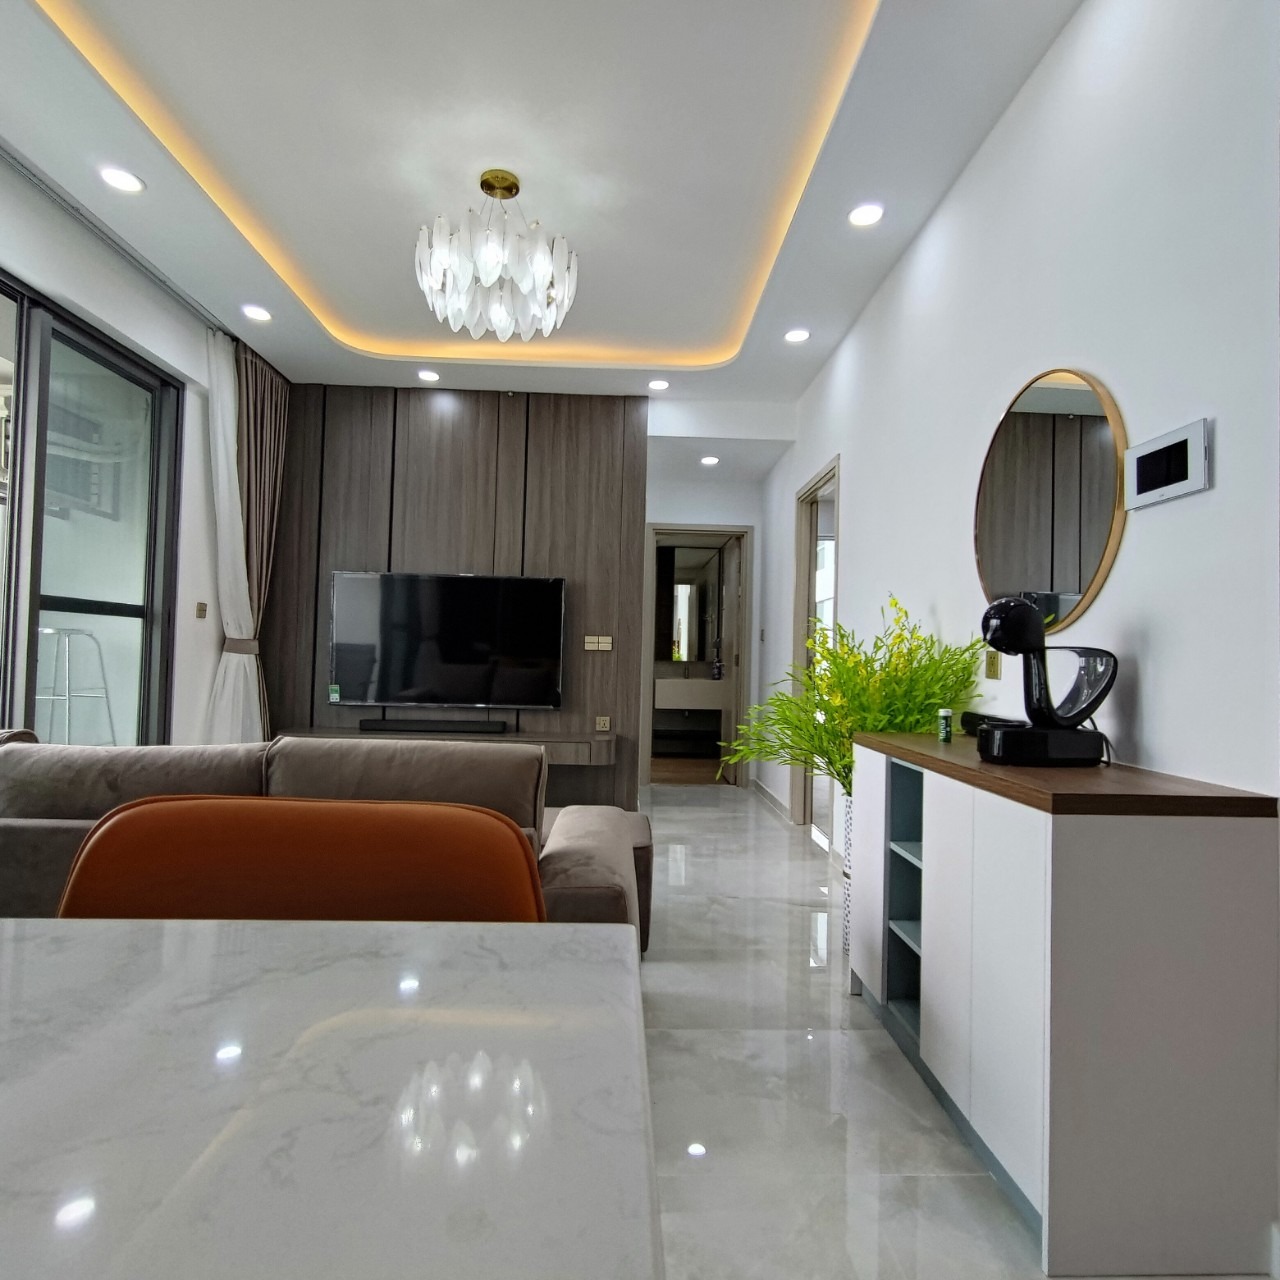 Cho thuê căn hộ The Ascentia, Phú Mỹ Hưng,DT 84m2, 2 PN, đầy đủ nội thất, new 100%. LH 078 825 3939